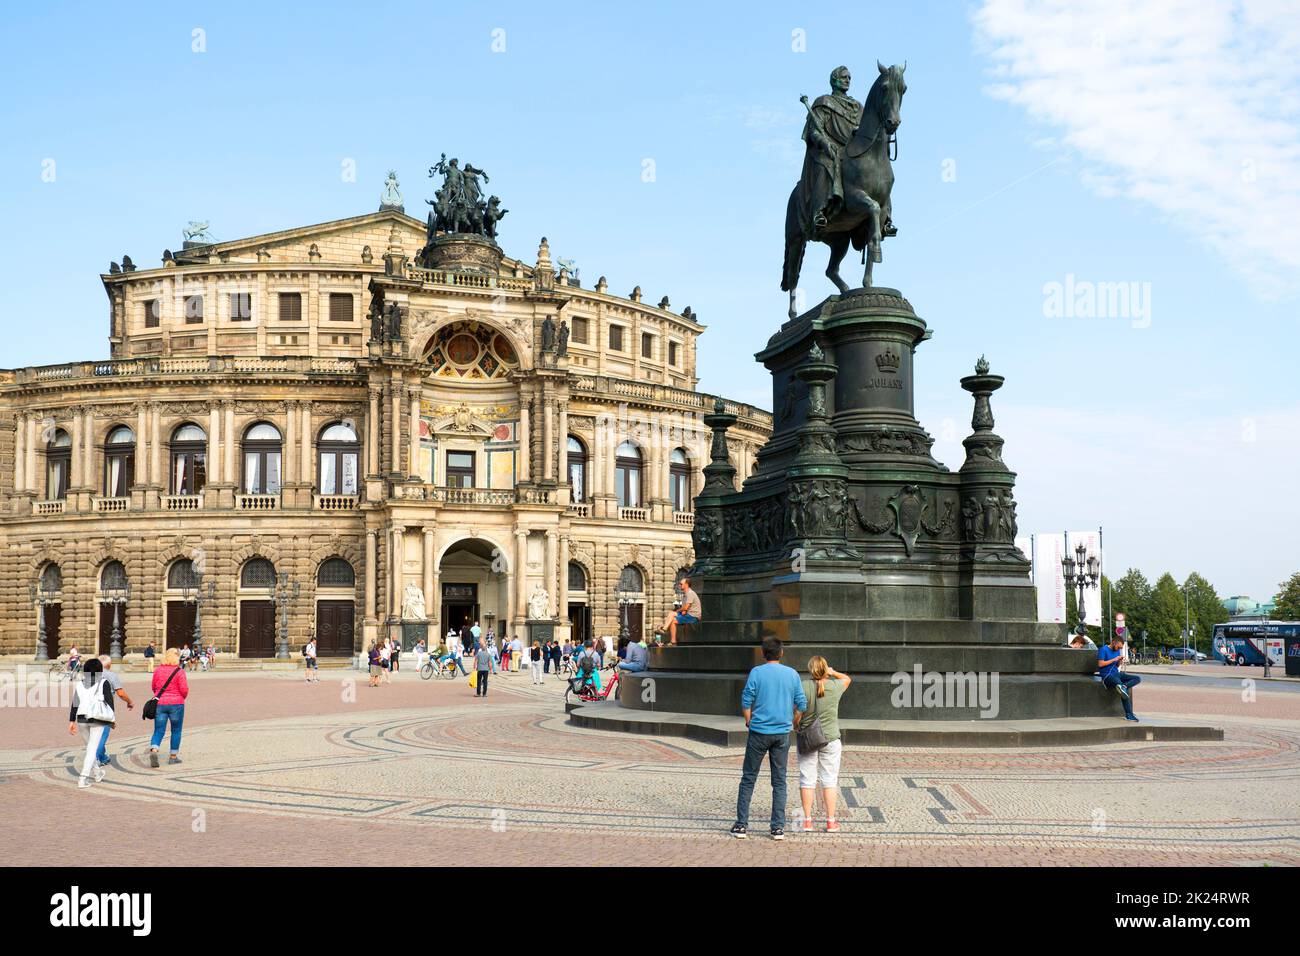 Dresden, Alemania - 23 de septiembre de 2020 : Semperoper, famosa ópera y estatua ecuestre del rey Jan Wettin situado en la plaza del teatro cerca del Elb Foto de stock